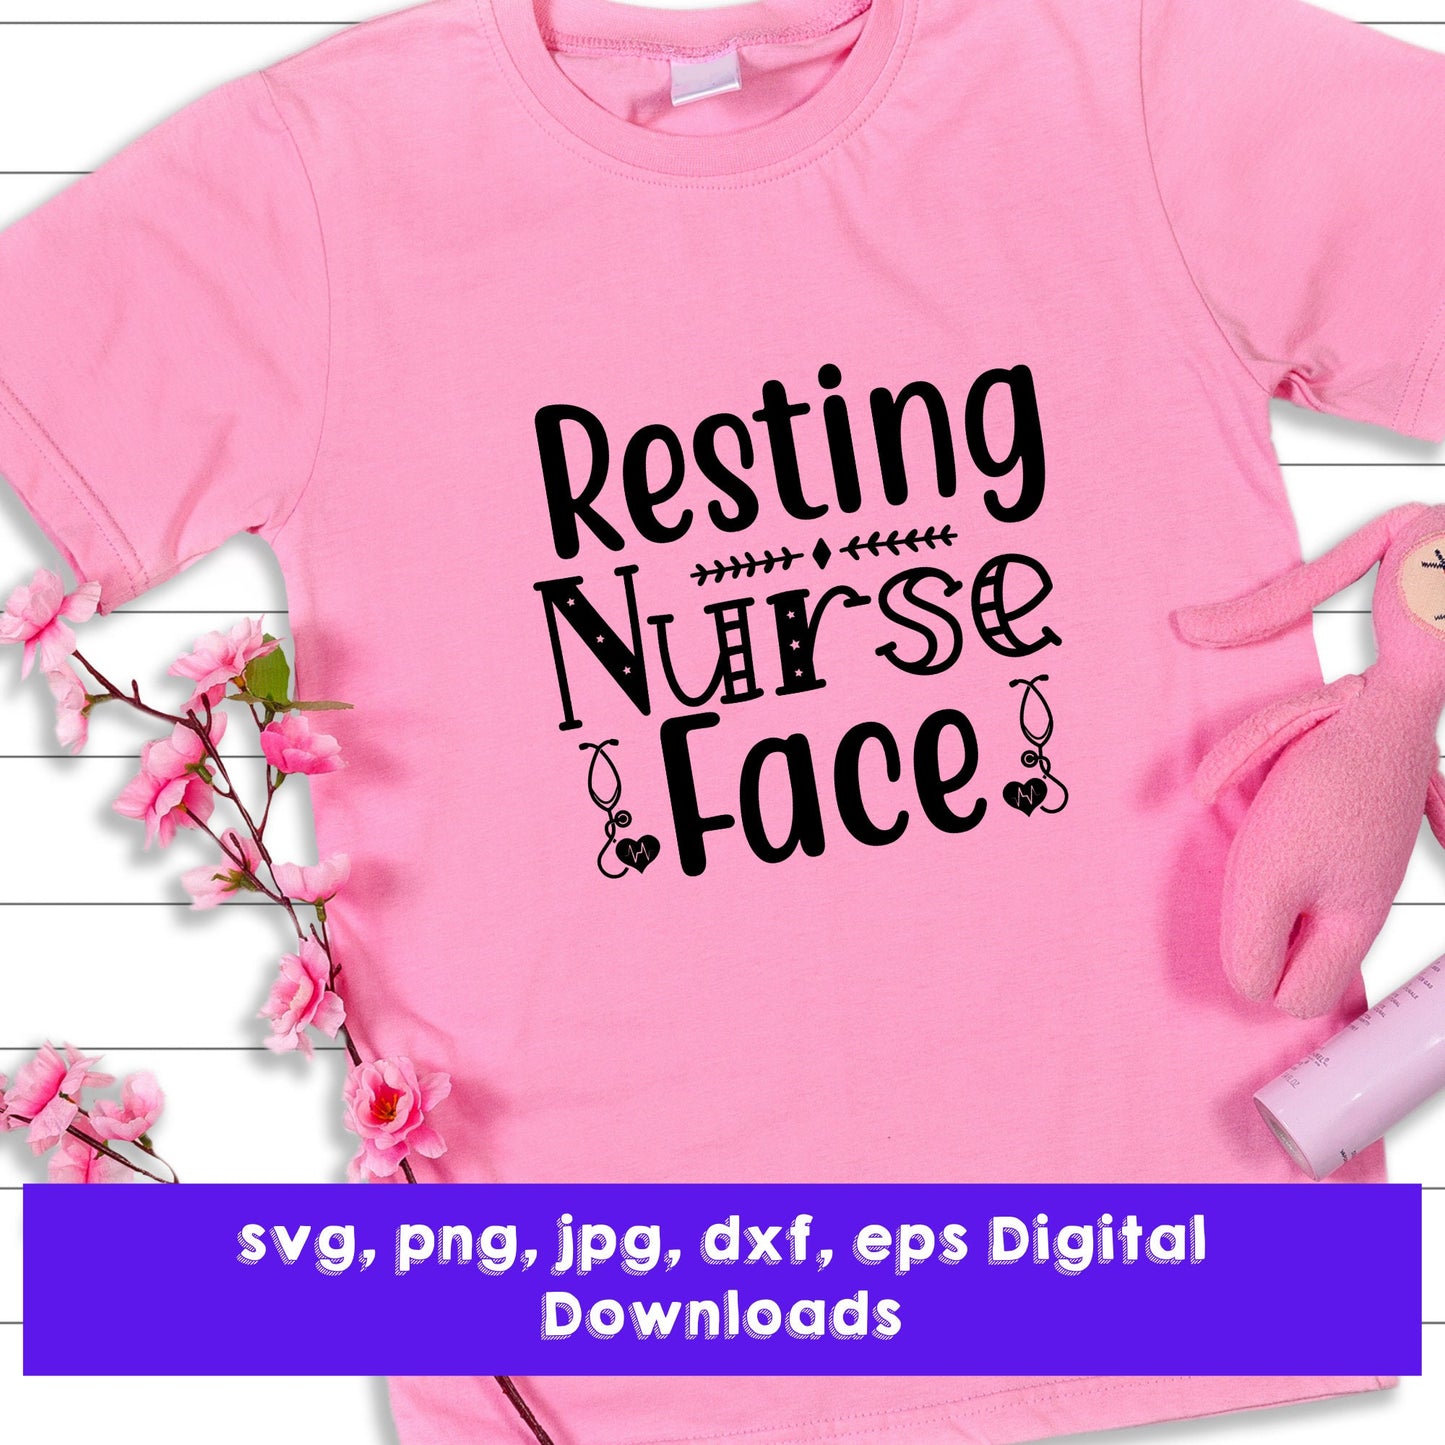 Resting Nurse Face